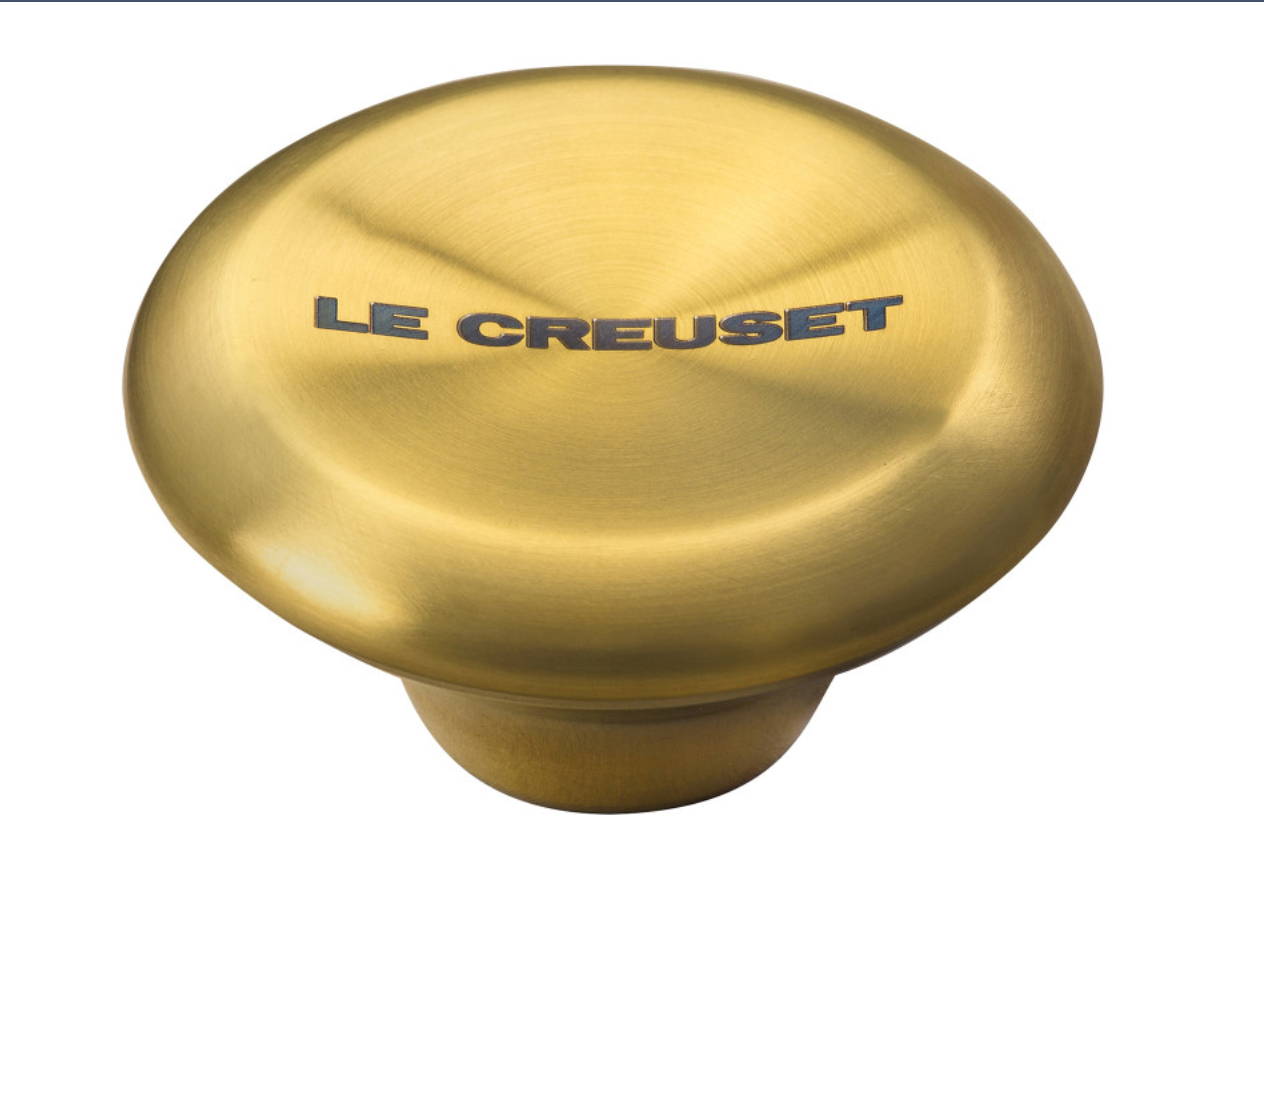 Le Creuset Signature Gold Knob - Medium – The Happy Cook